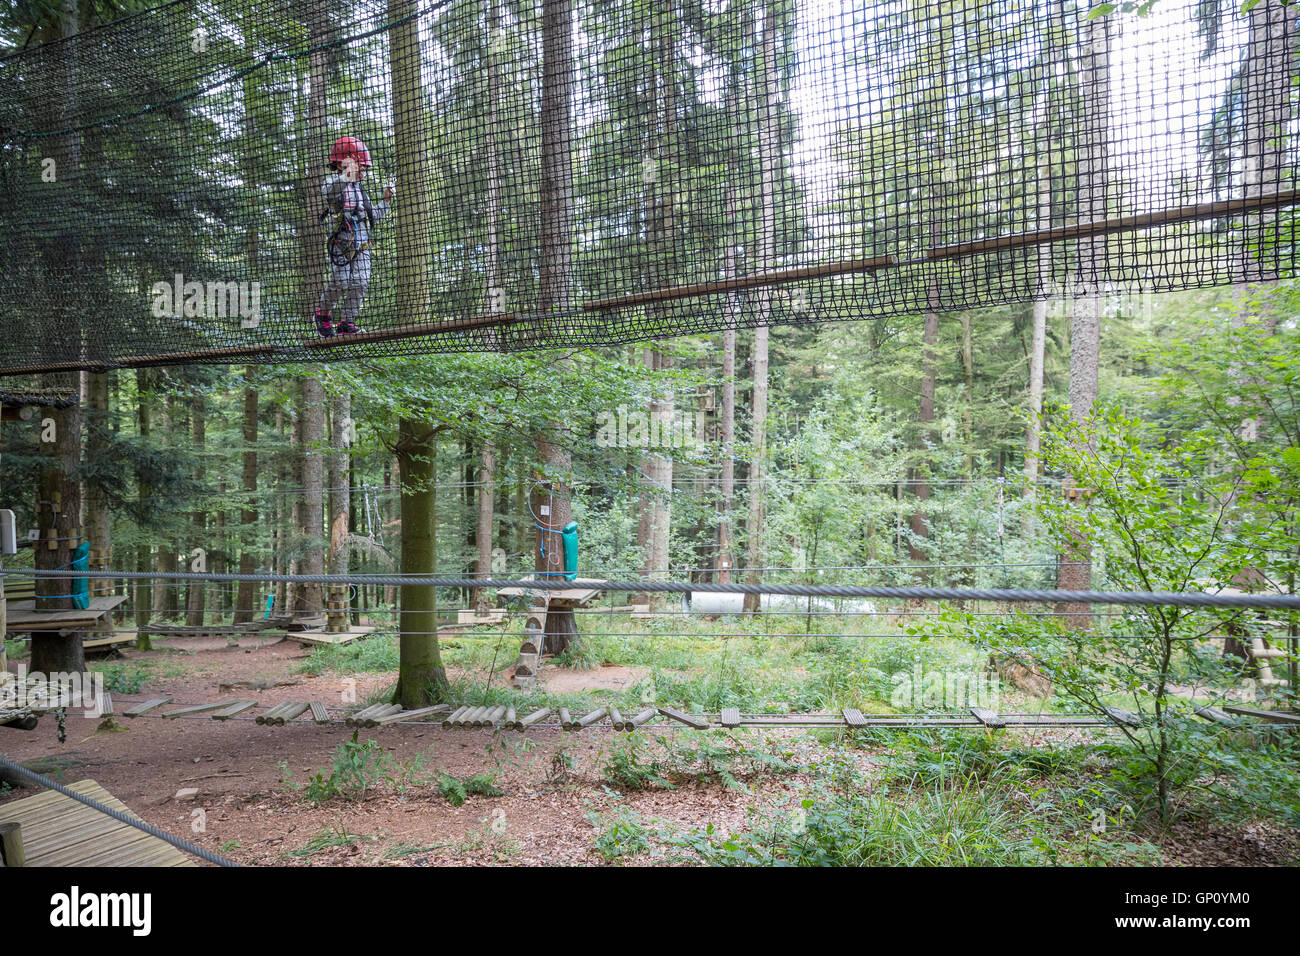 Junges Mädchen in einem Netz im Baumklettern Aktivität Stockfoto